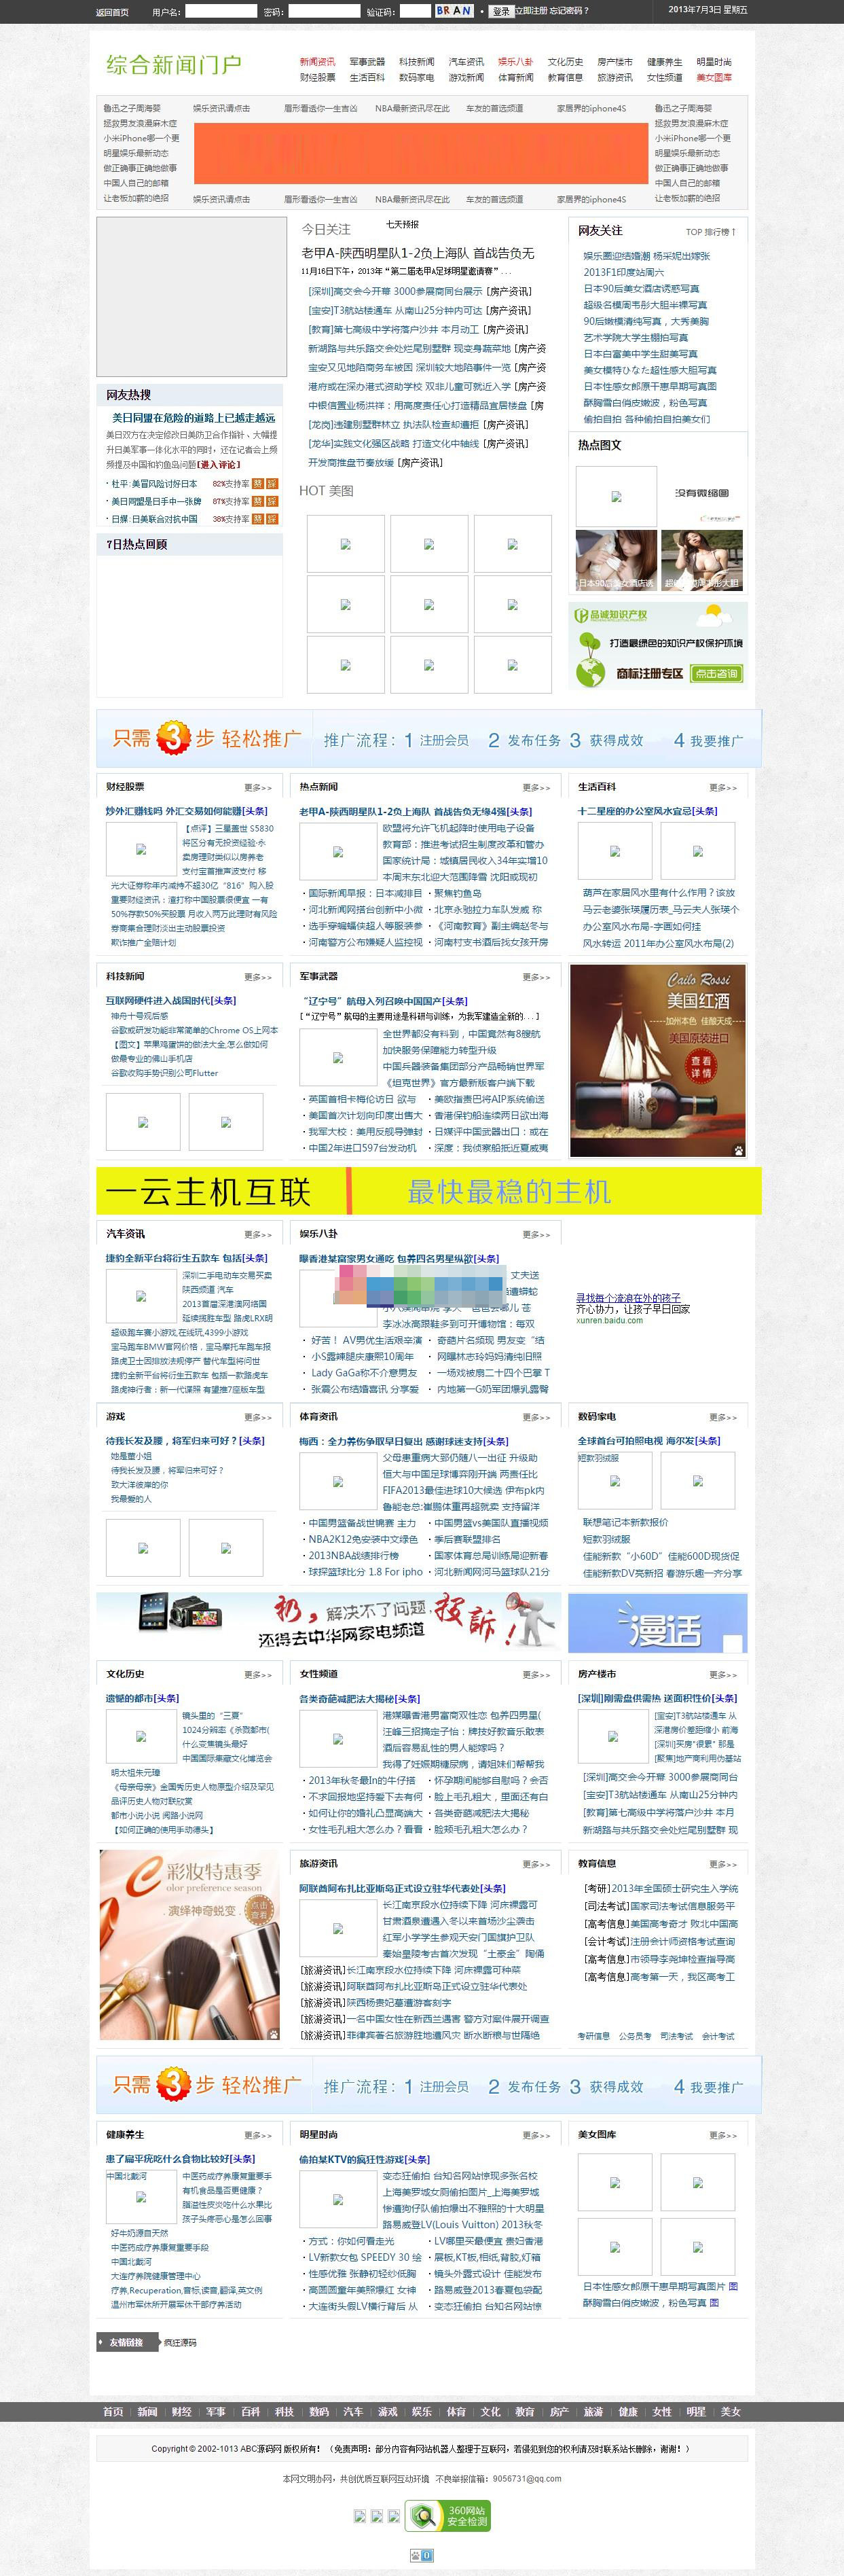 dedecms新闻综合门户网站源码 带后台采集插图